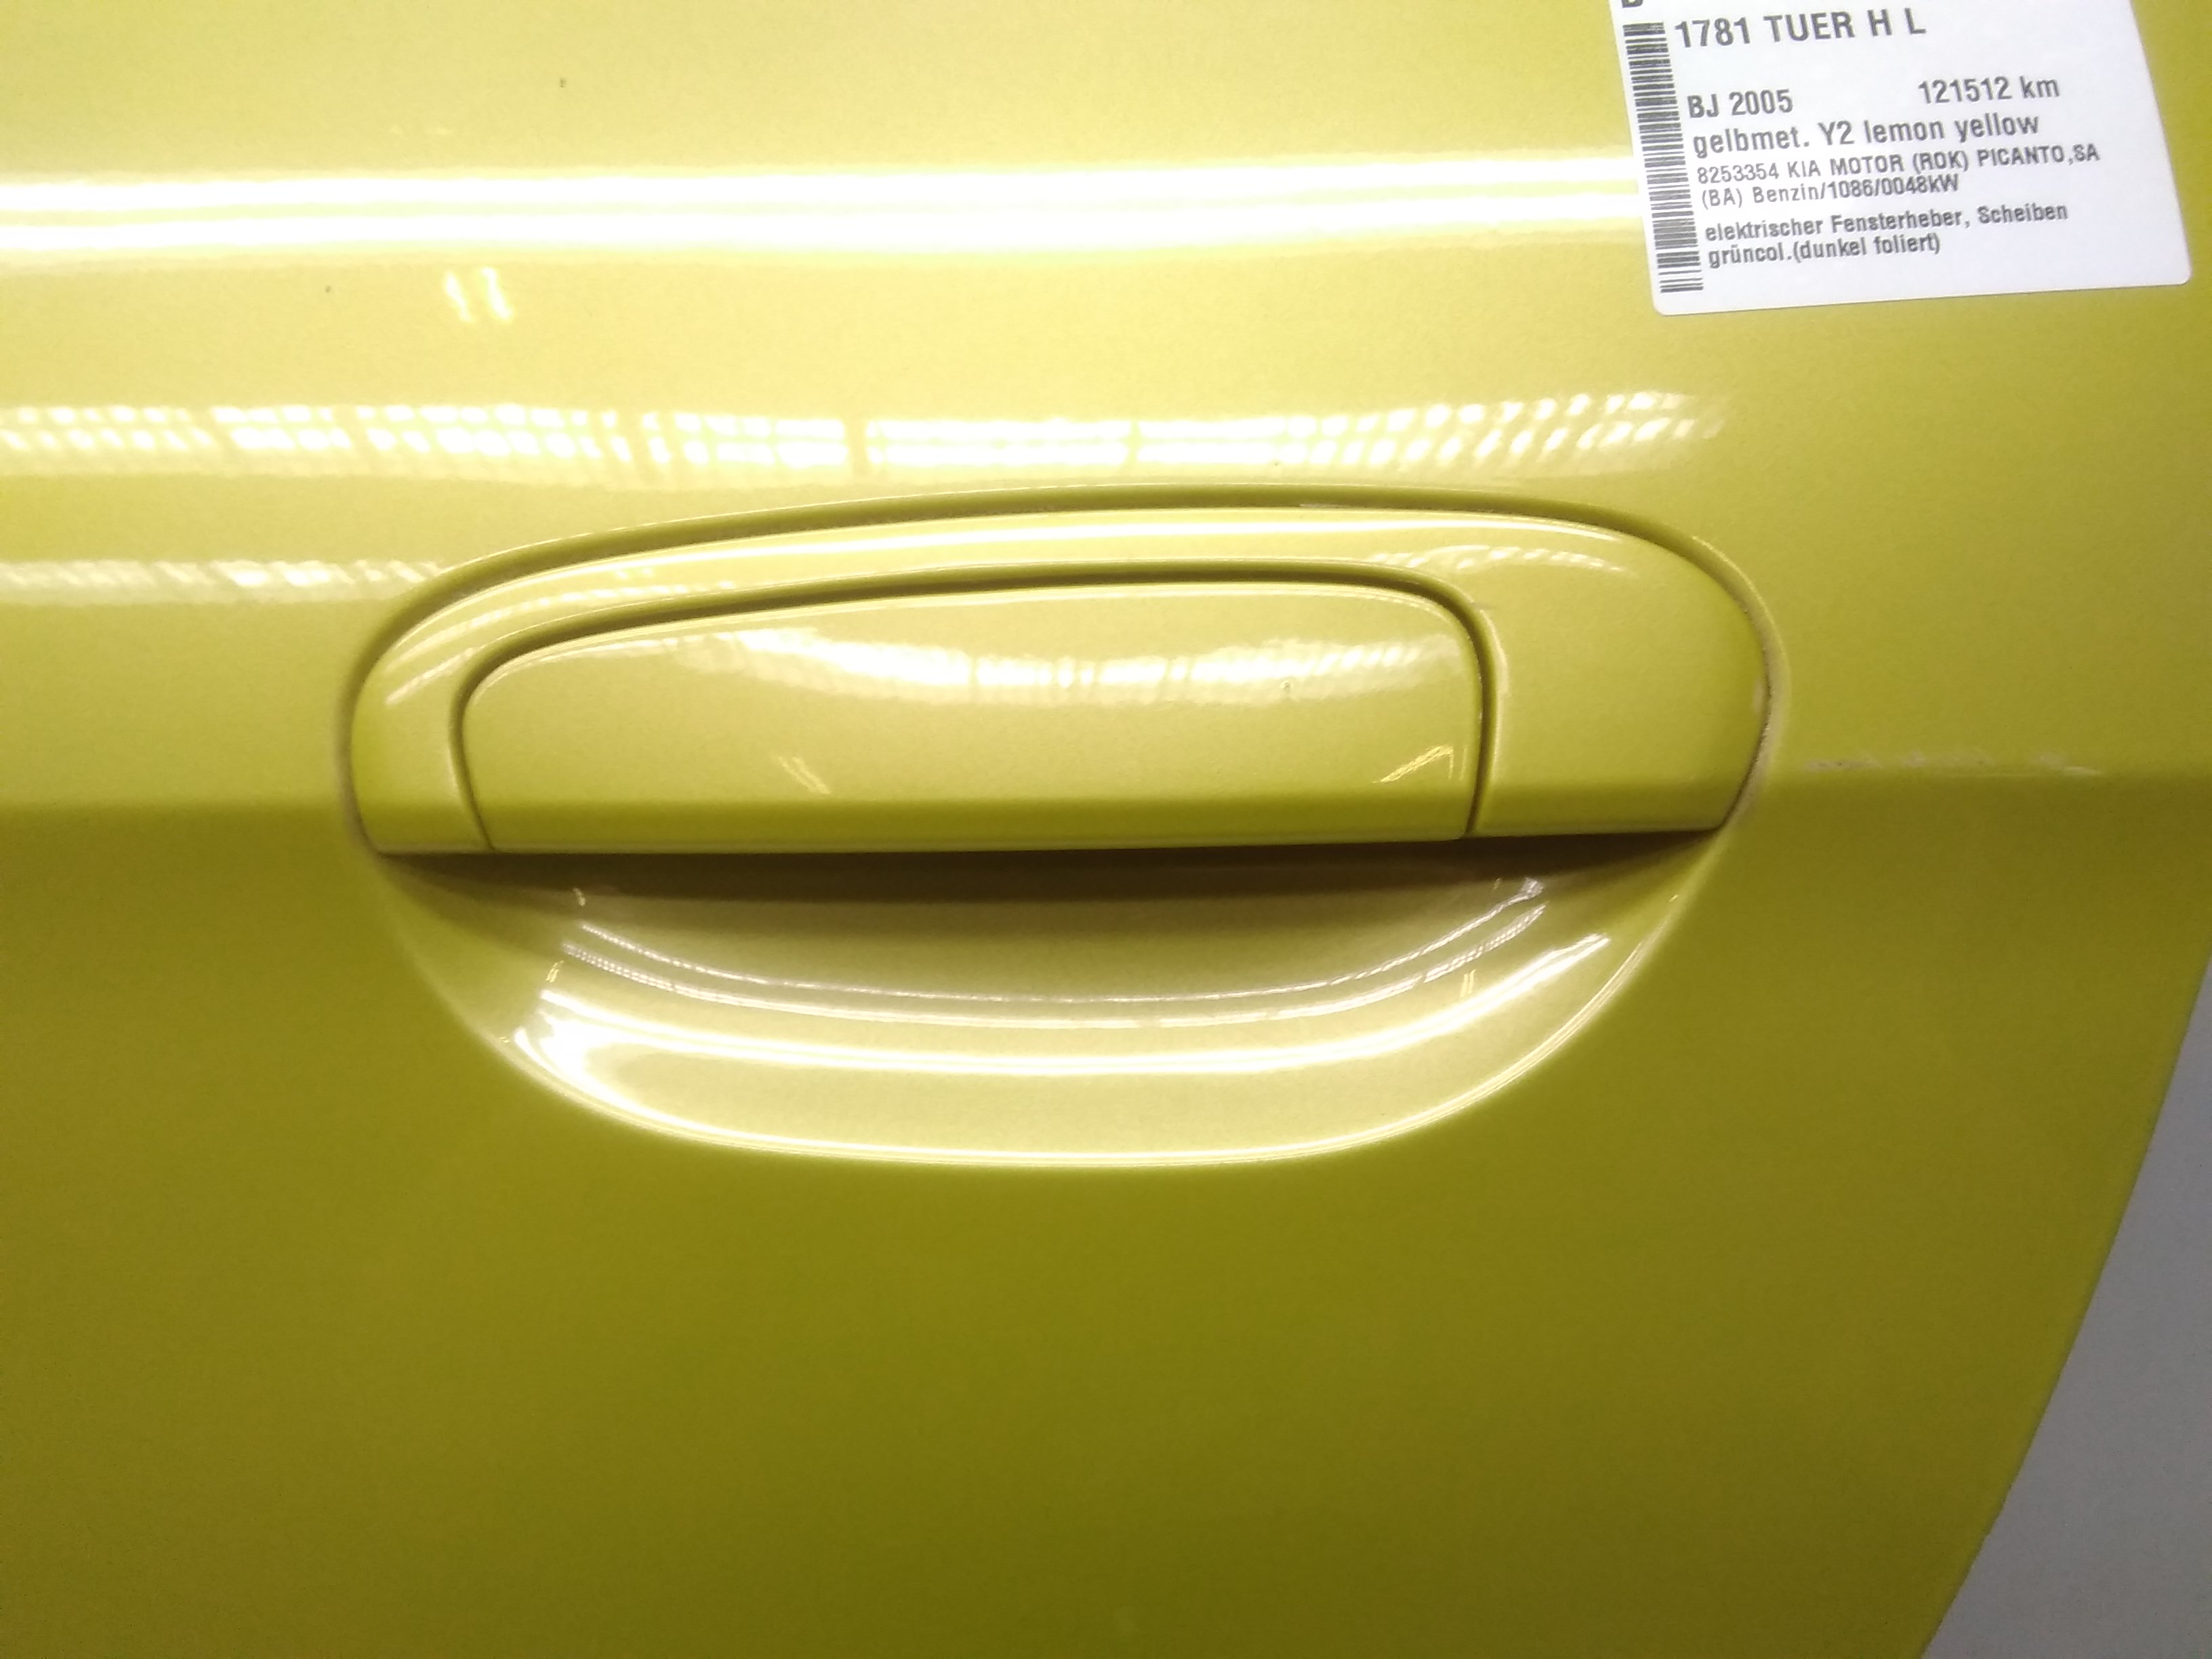 Kia Picanto BA Bj.2005 Tür hinten links gelbmet. Y2 lemon yellow